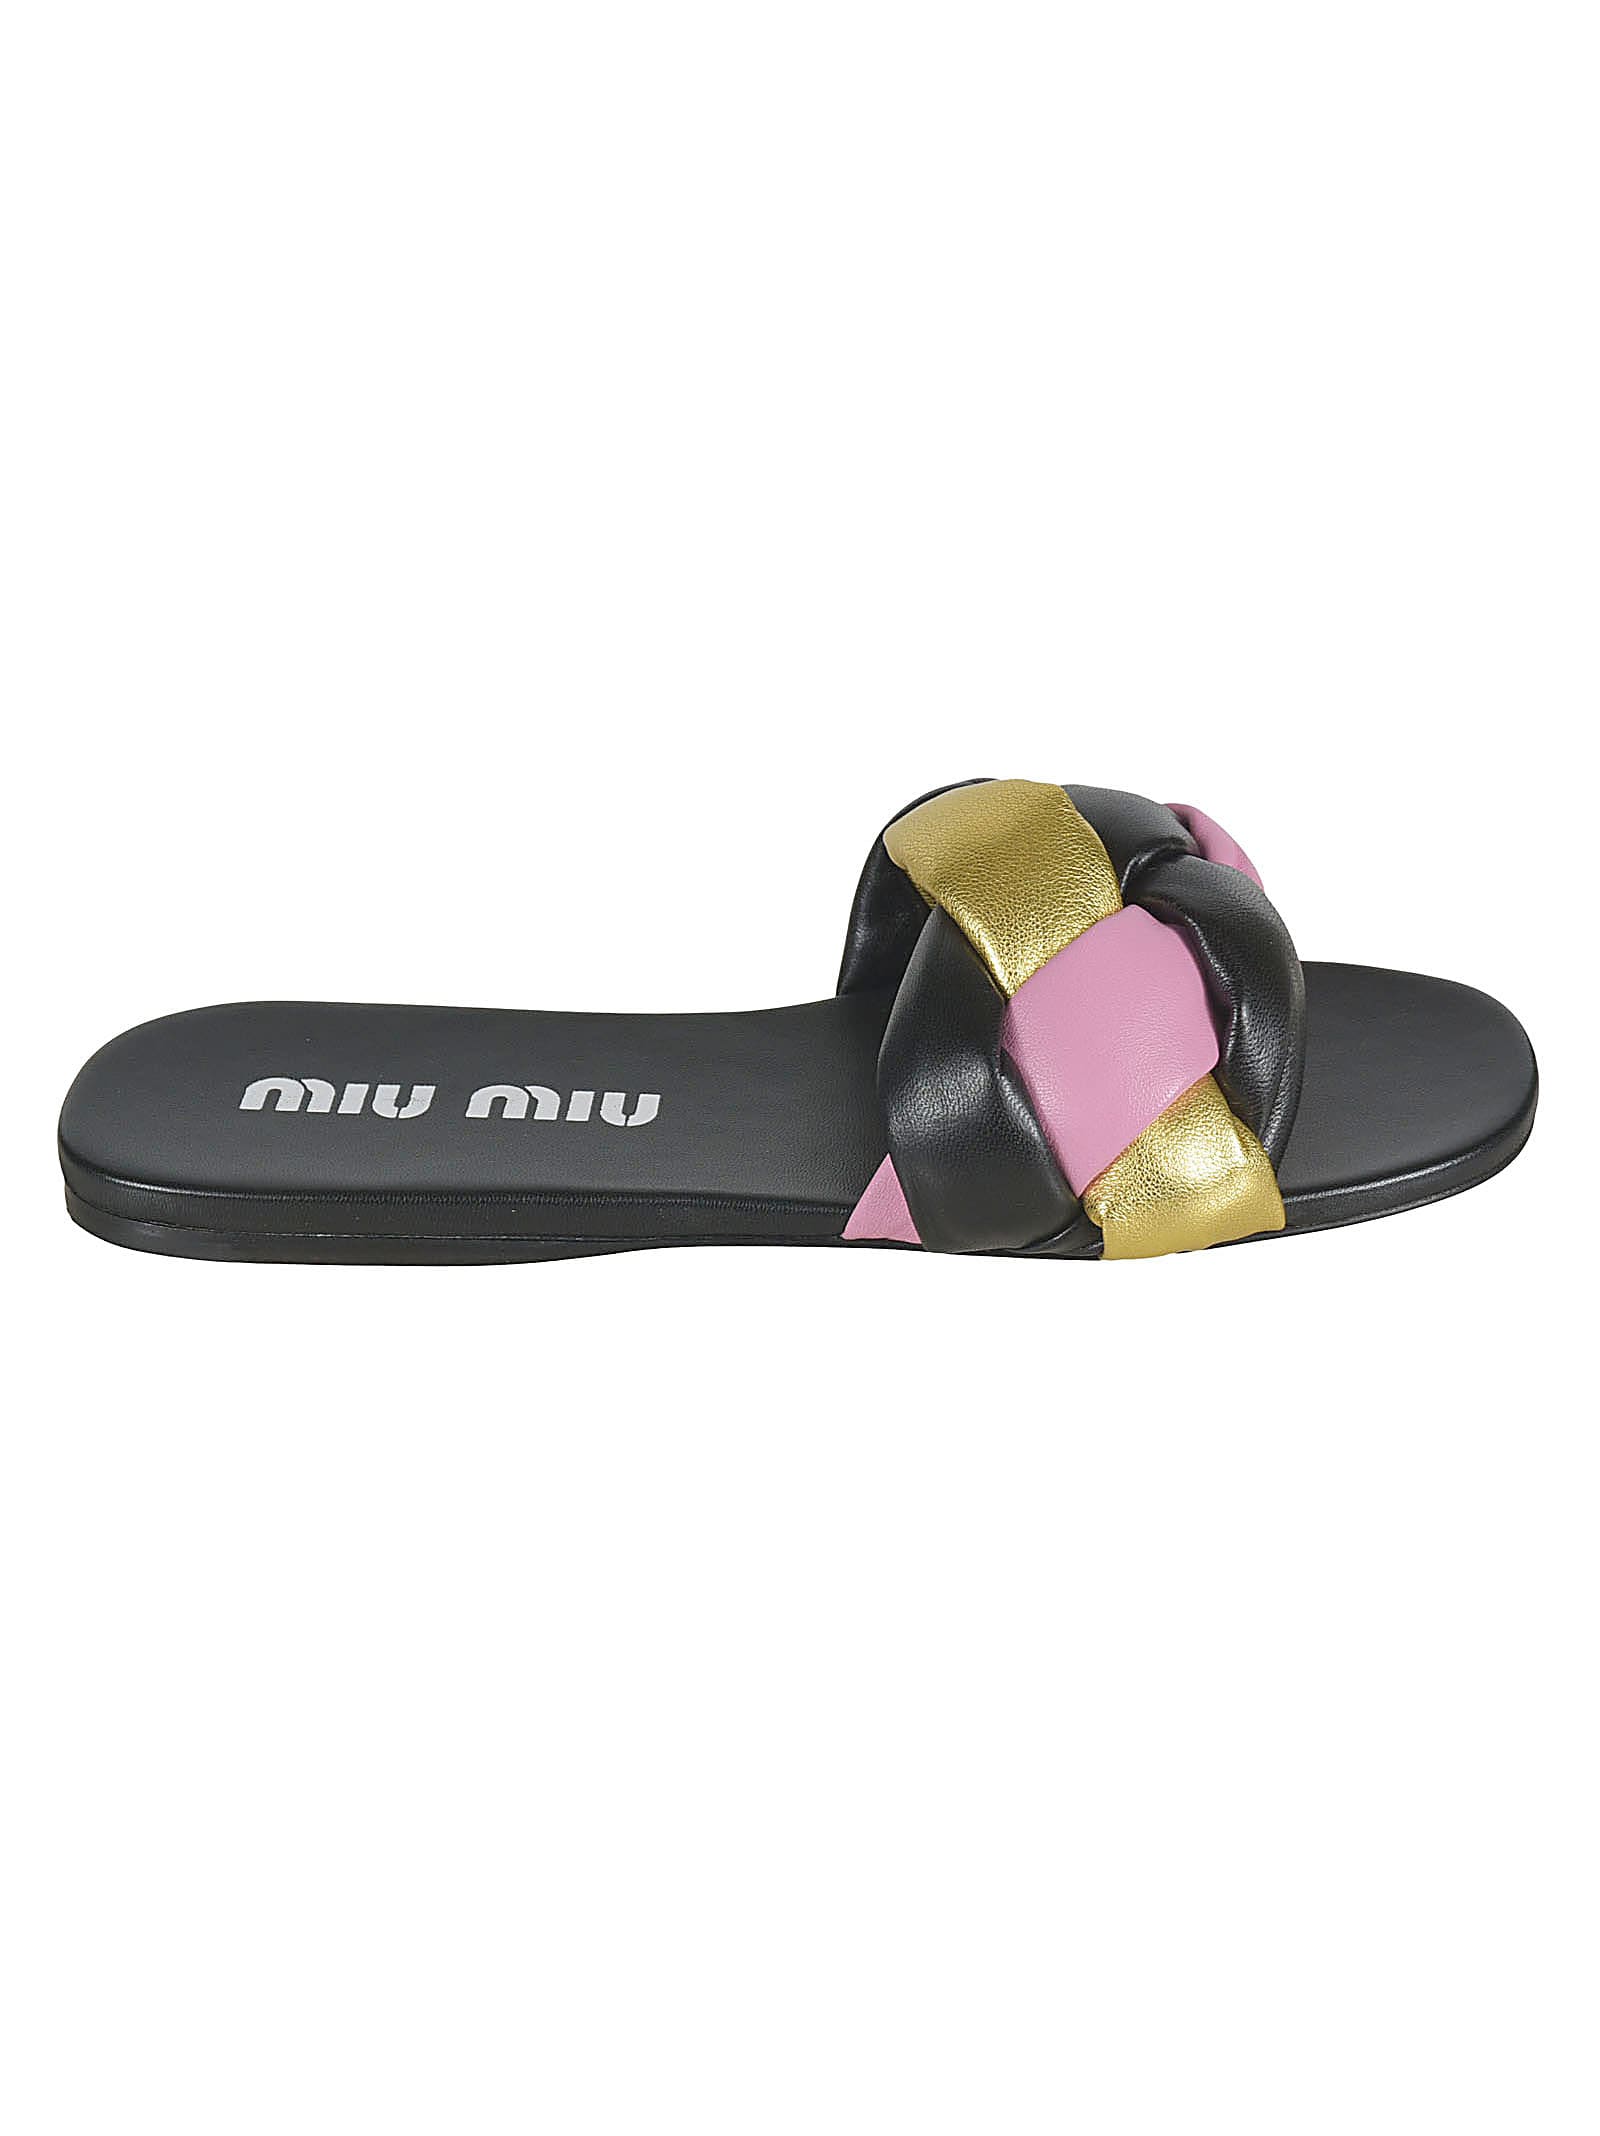 Buy Miu Miu Woven Sliders online, shop Miu Miu shoes with free shipping